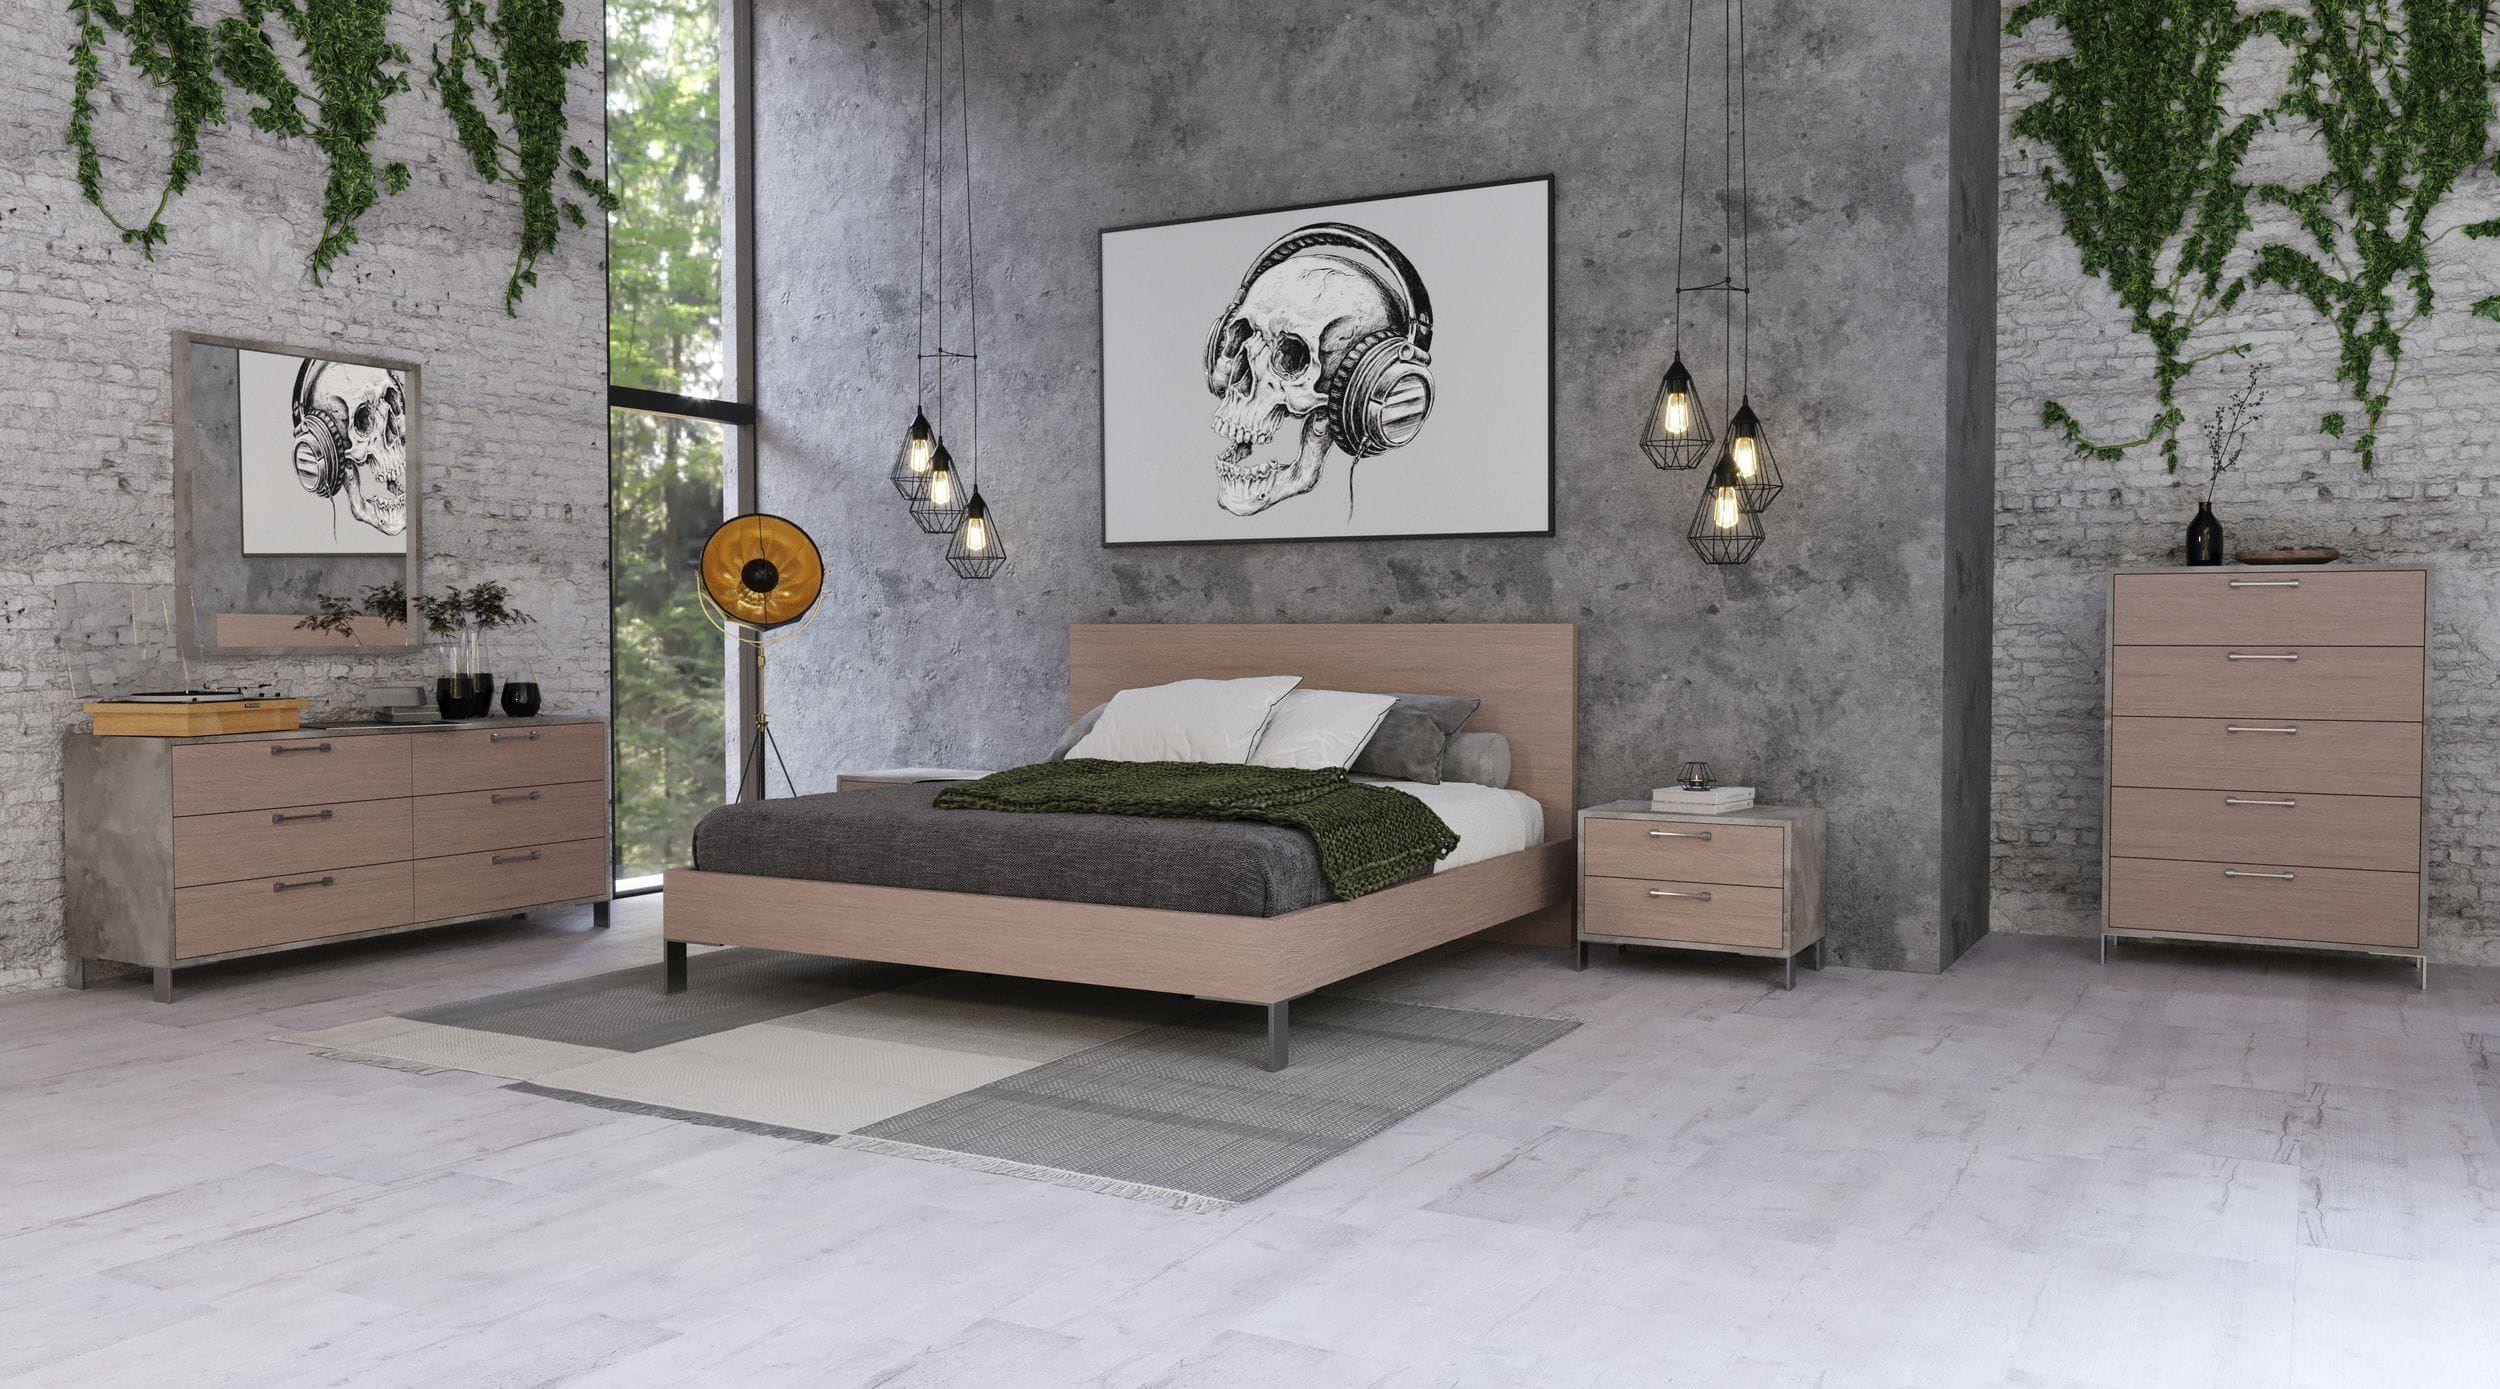 

    
Light Oak & Brushed Stainless Steel Queen Panel Bedroom Set 5Pcs by VIG Nova Domus Boston
